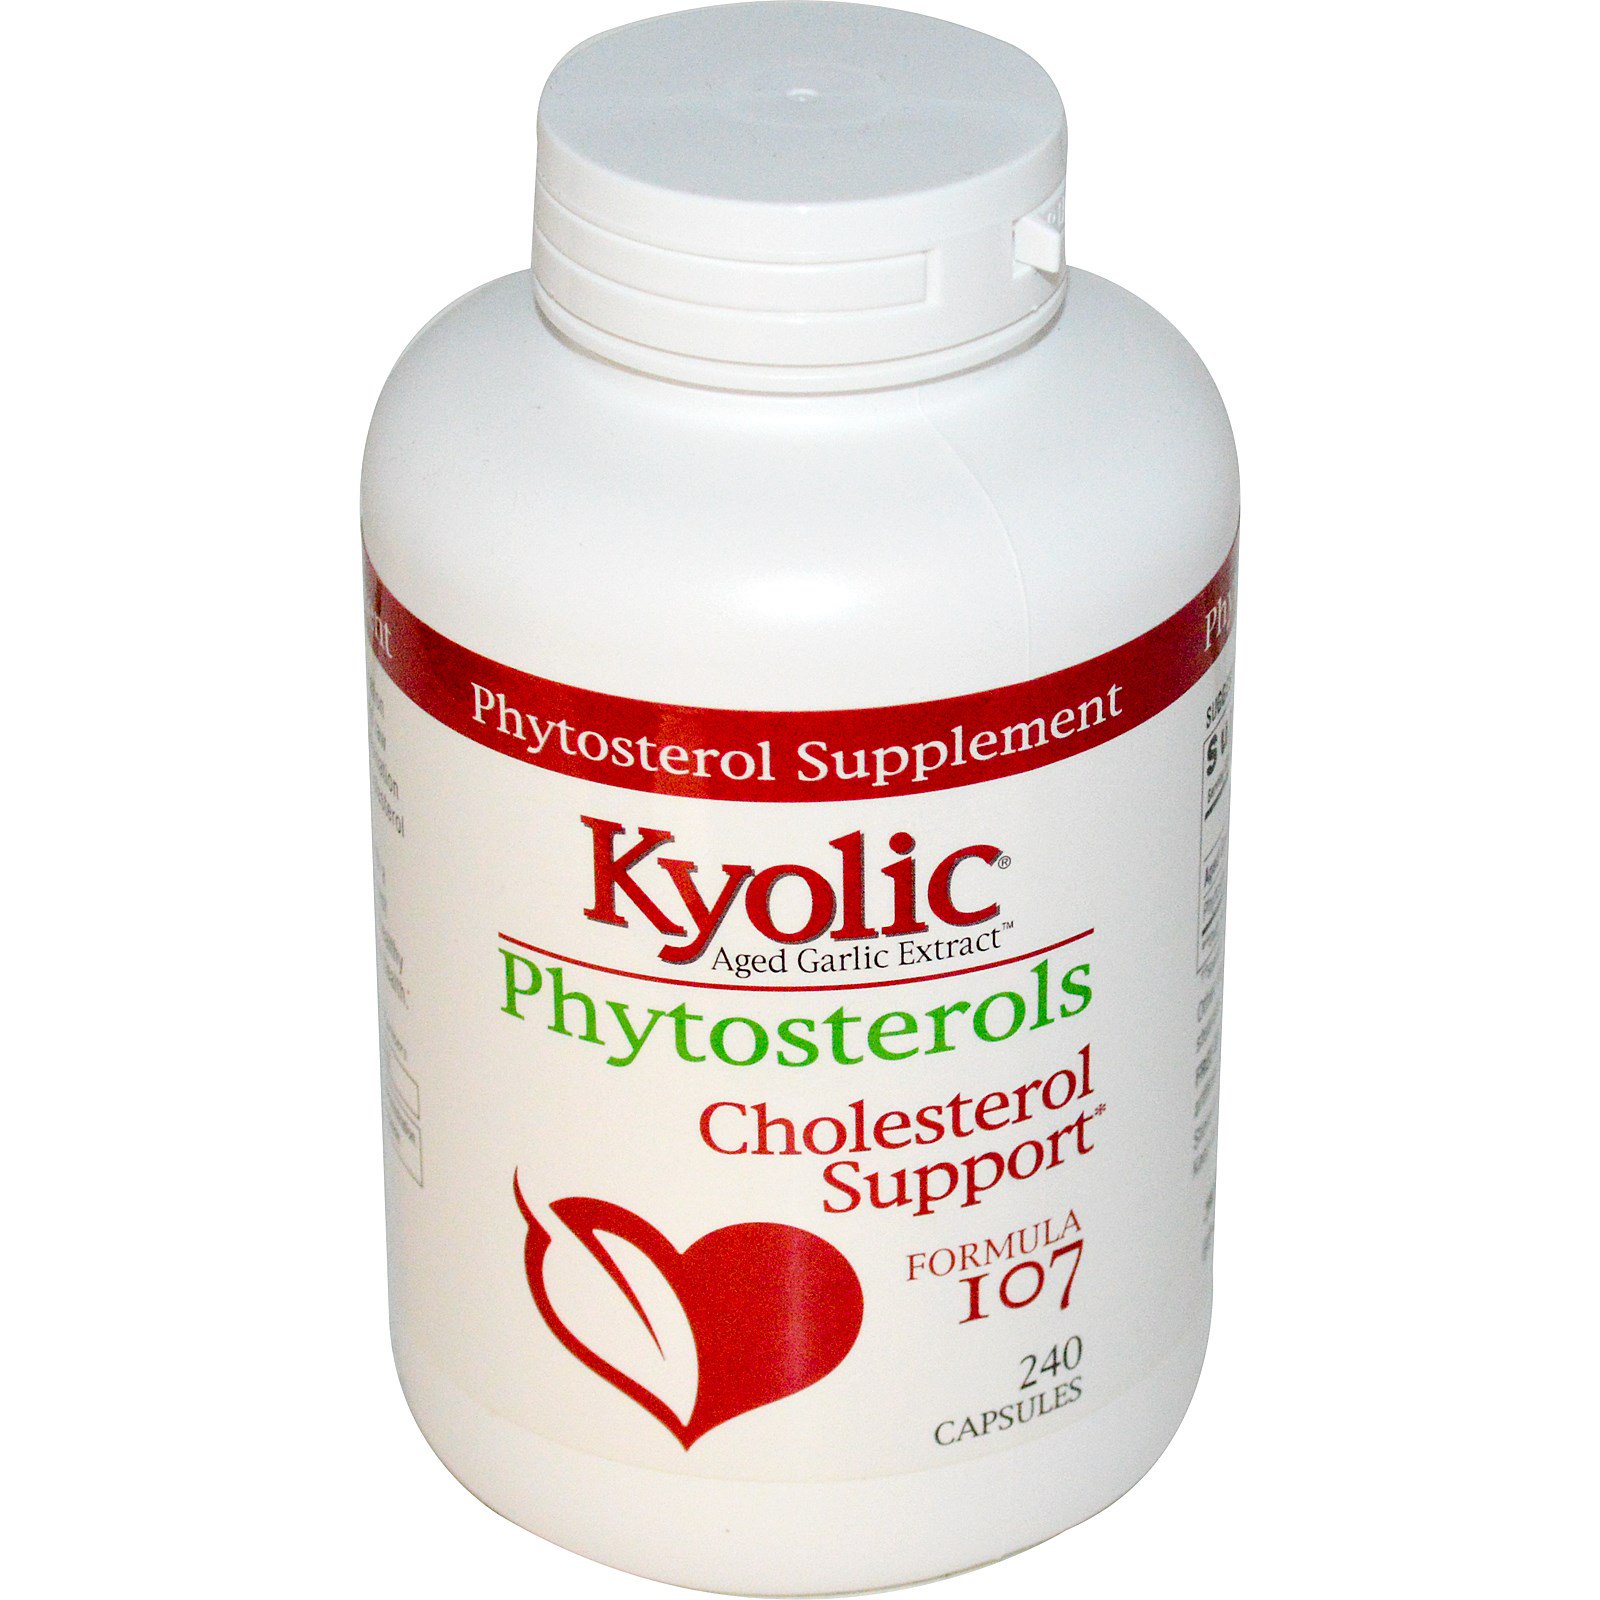 Kyolic, Фитостерины выдержанного чесночного экстракта, формула поддержки холестерола 107, 240 капсул